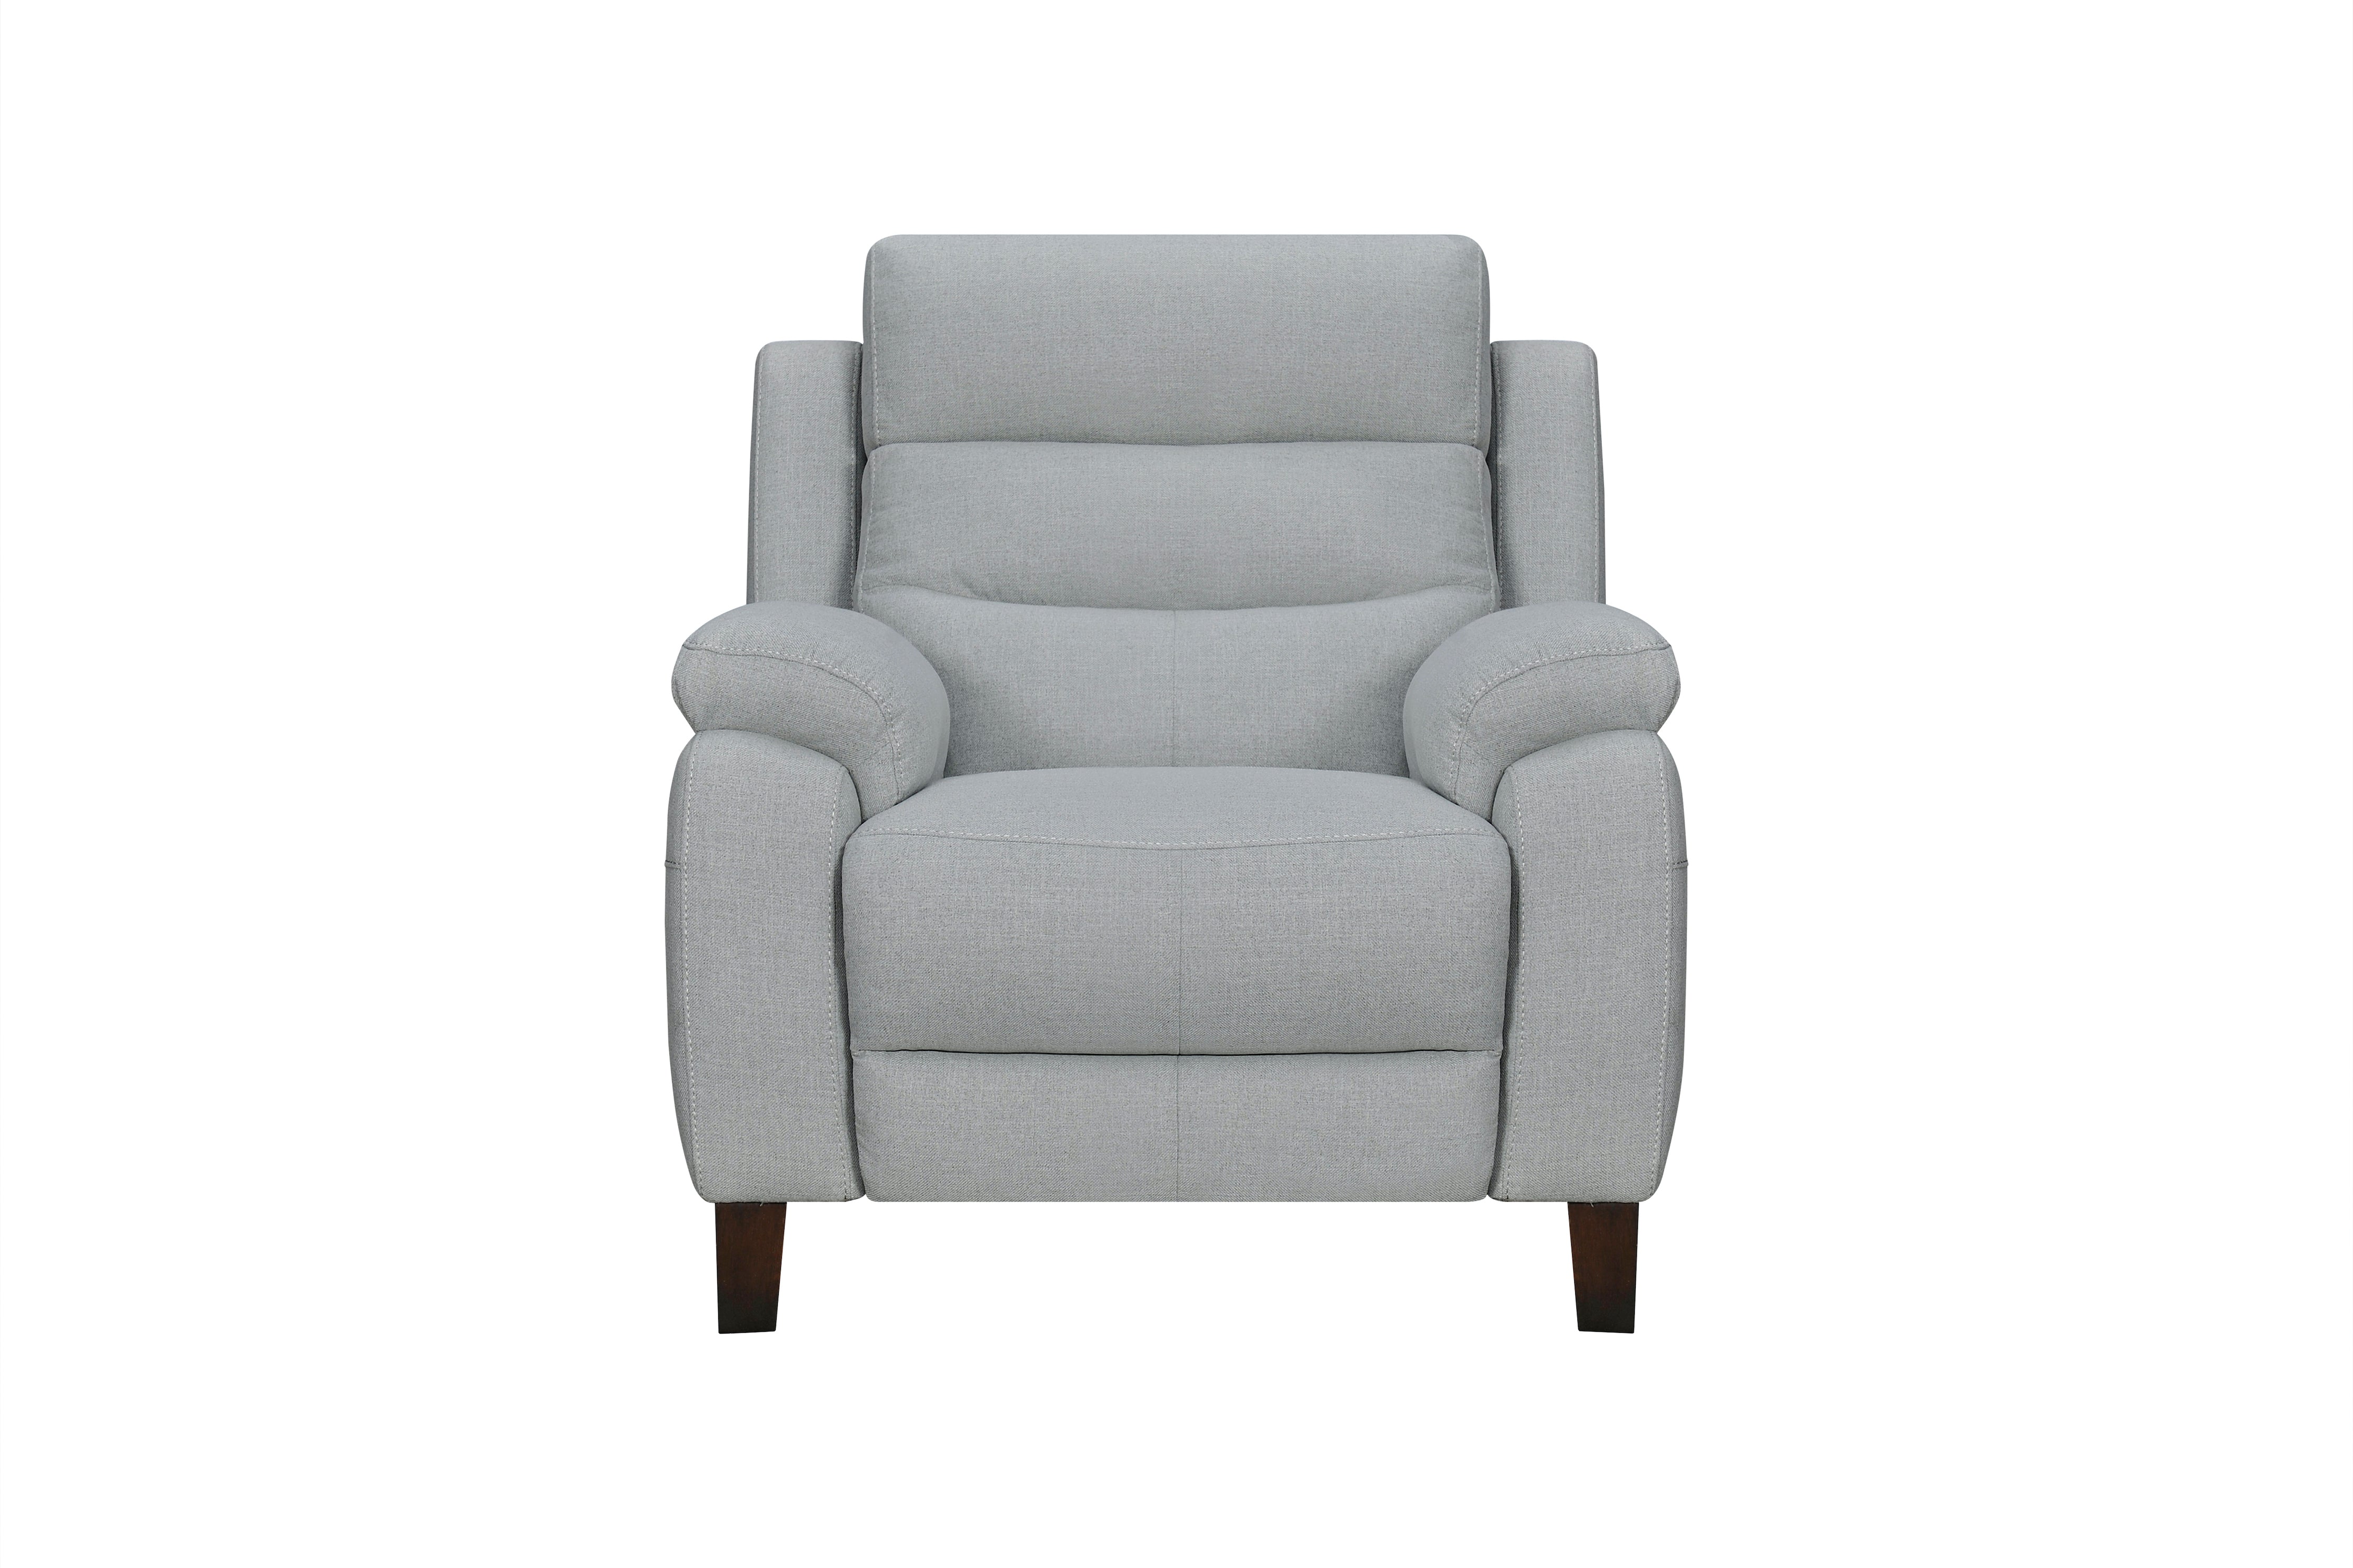 Crosby Chair - Power Reclining w/ Power Headrest - Grey Fabric